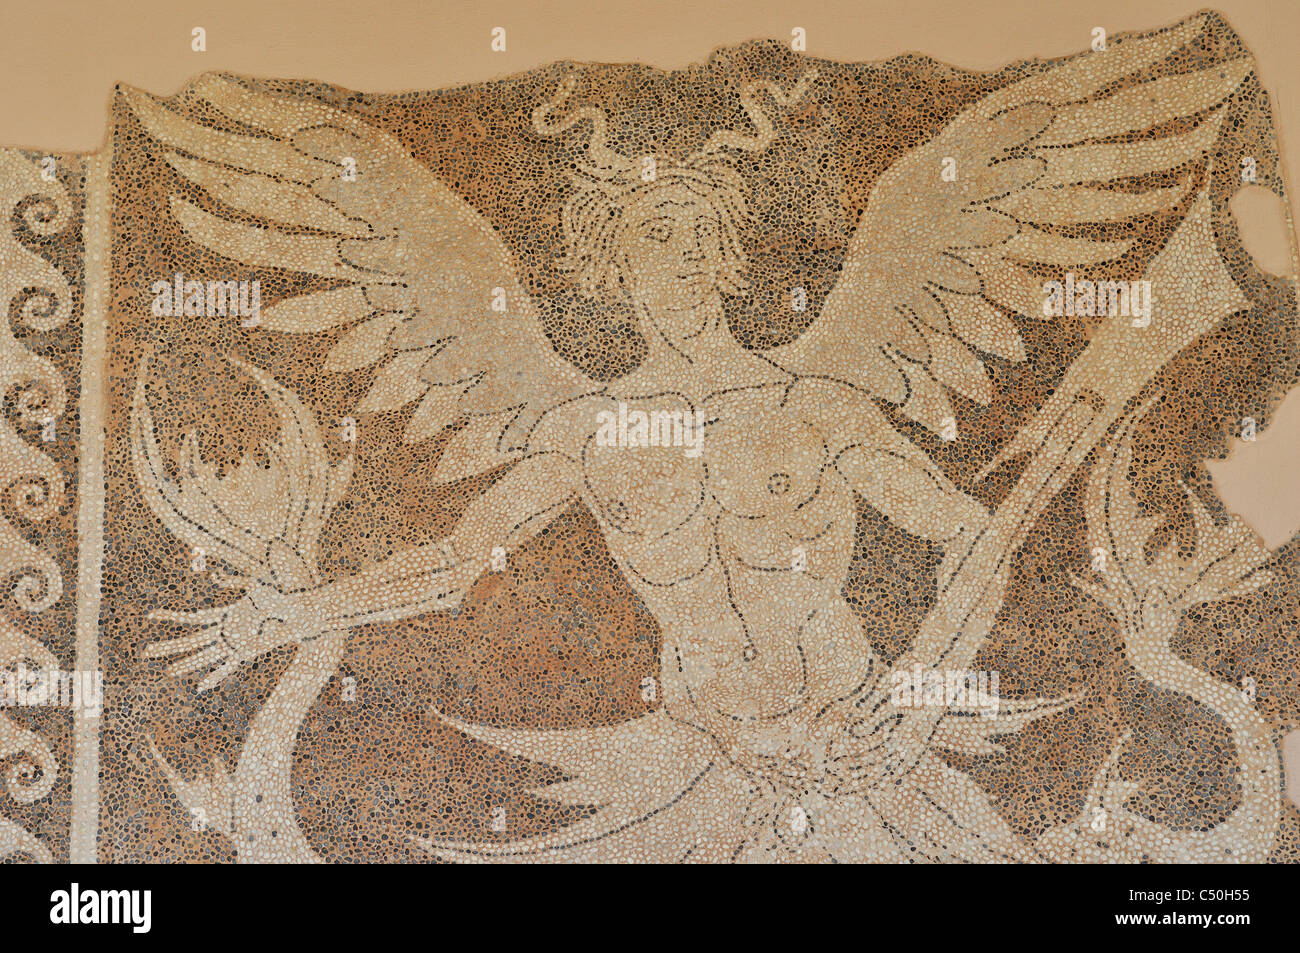 Rodas. Grecia. El Museo Arqueológico, el Casco Antiguo, la ciudad de Rodas. Piso de mosaico con representación de Triton. 3a.C.. Foto de stock